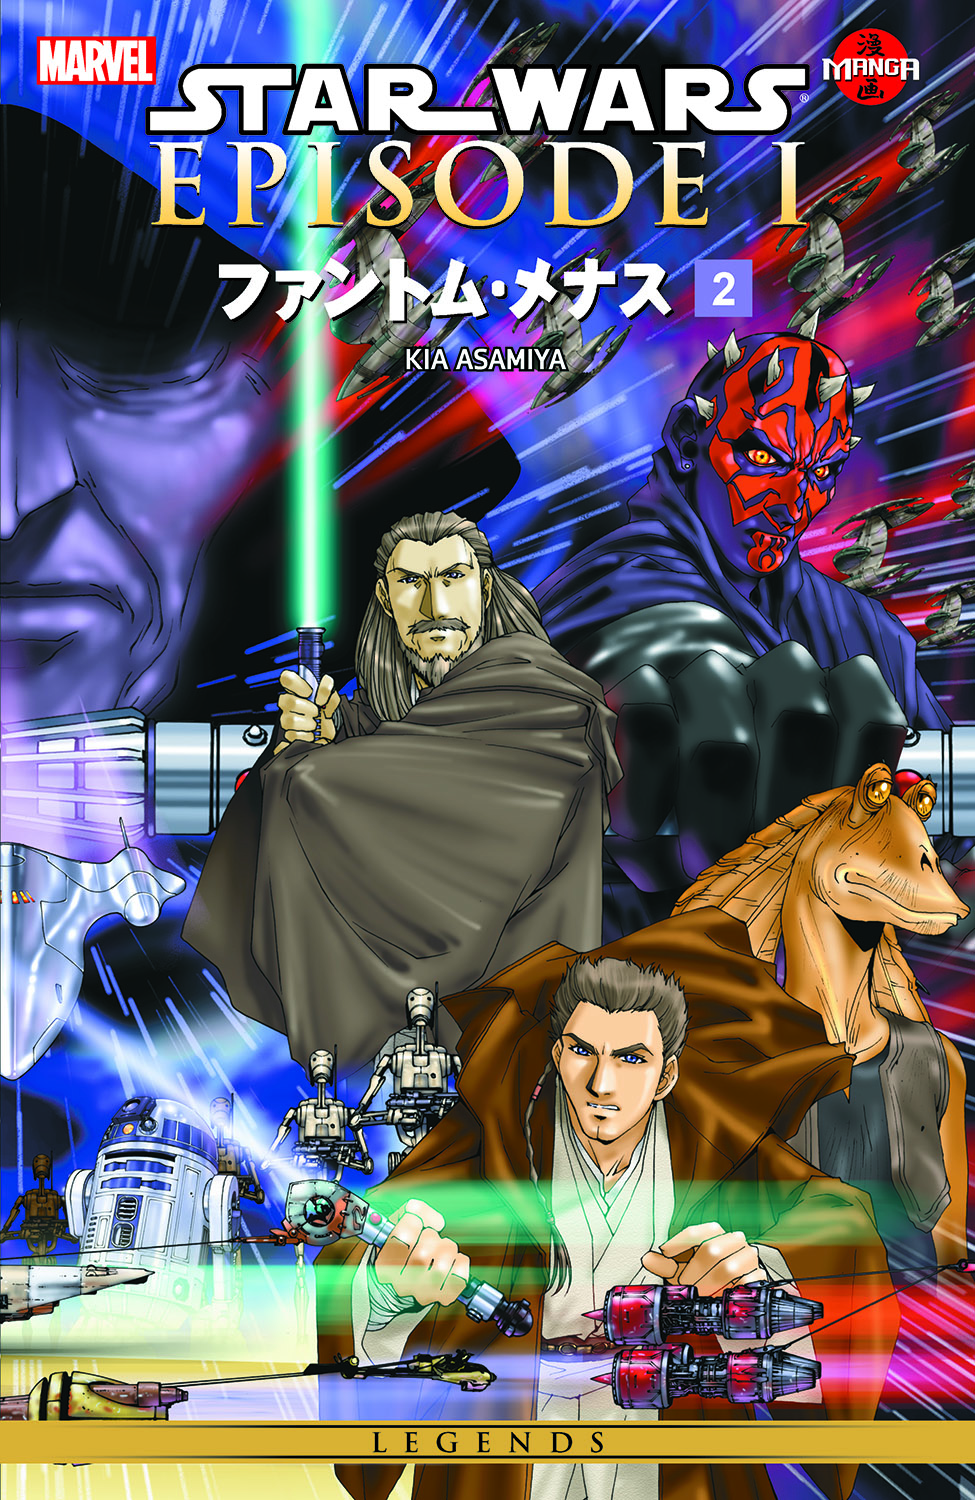 Star Wars: Episode I - The Phantom Menace Manga (1999) #2